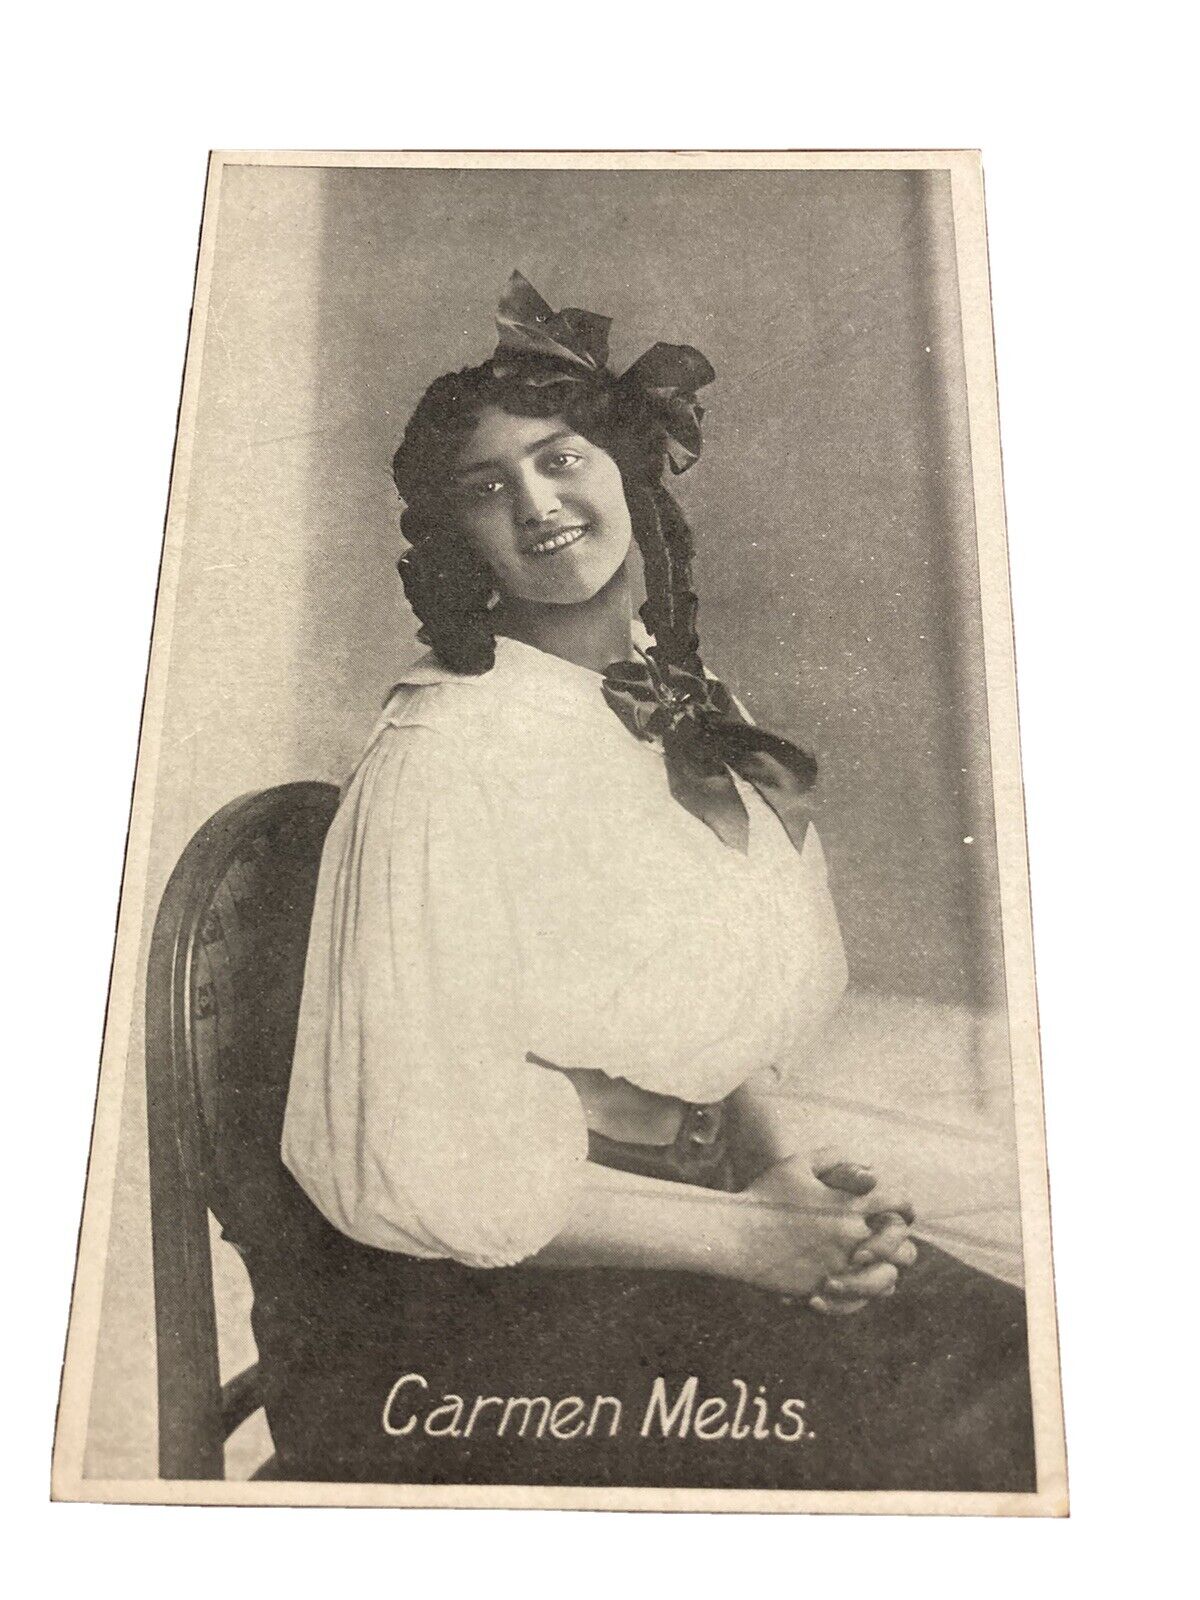 Carmen Melis December 4 1911 Repertoire Thais Tosca La Boheme Postcard